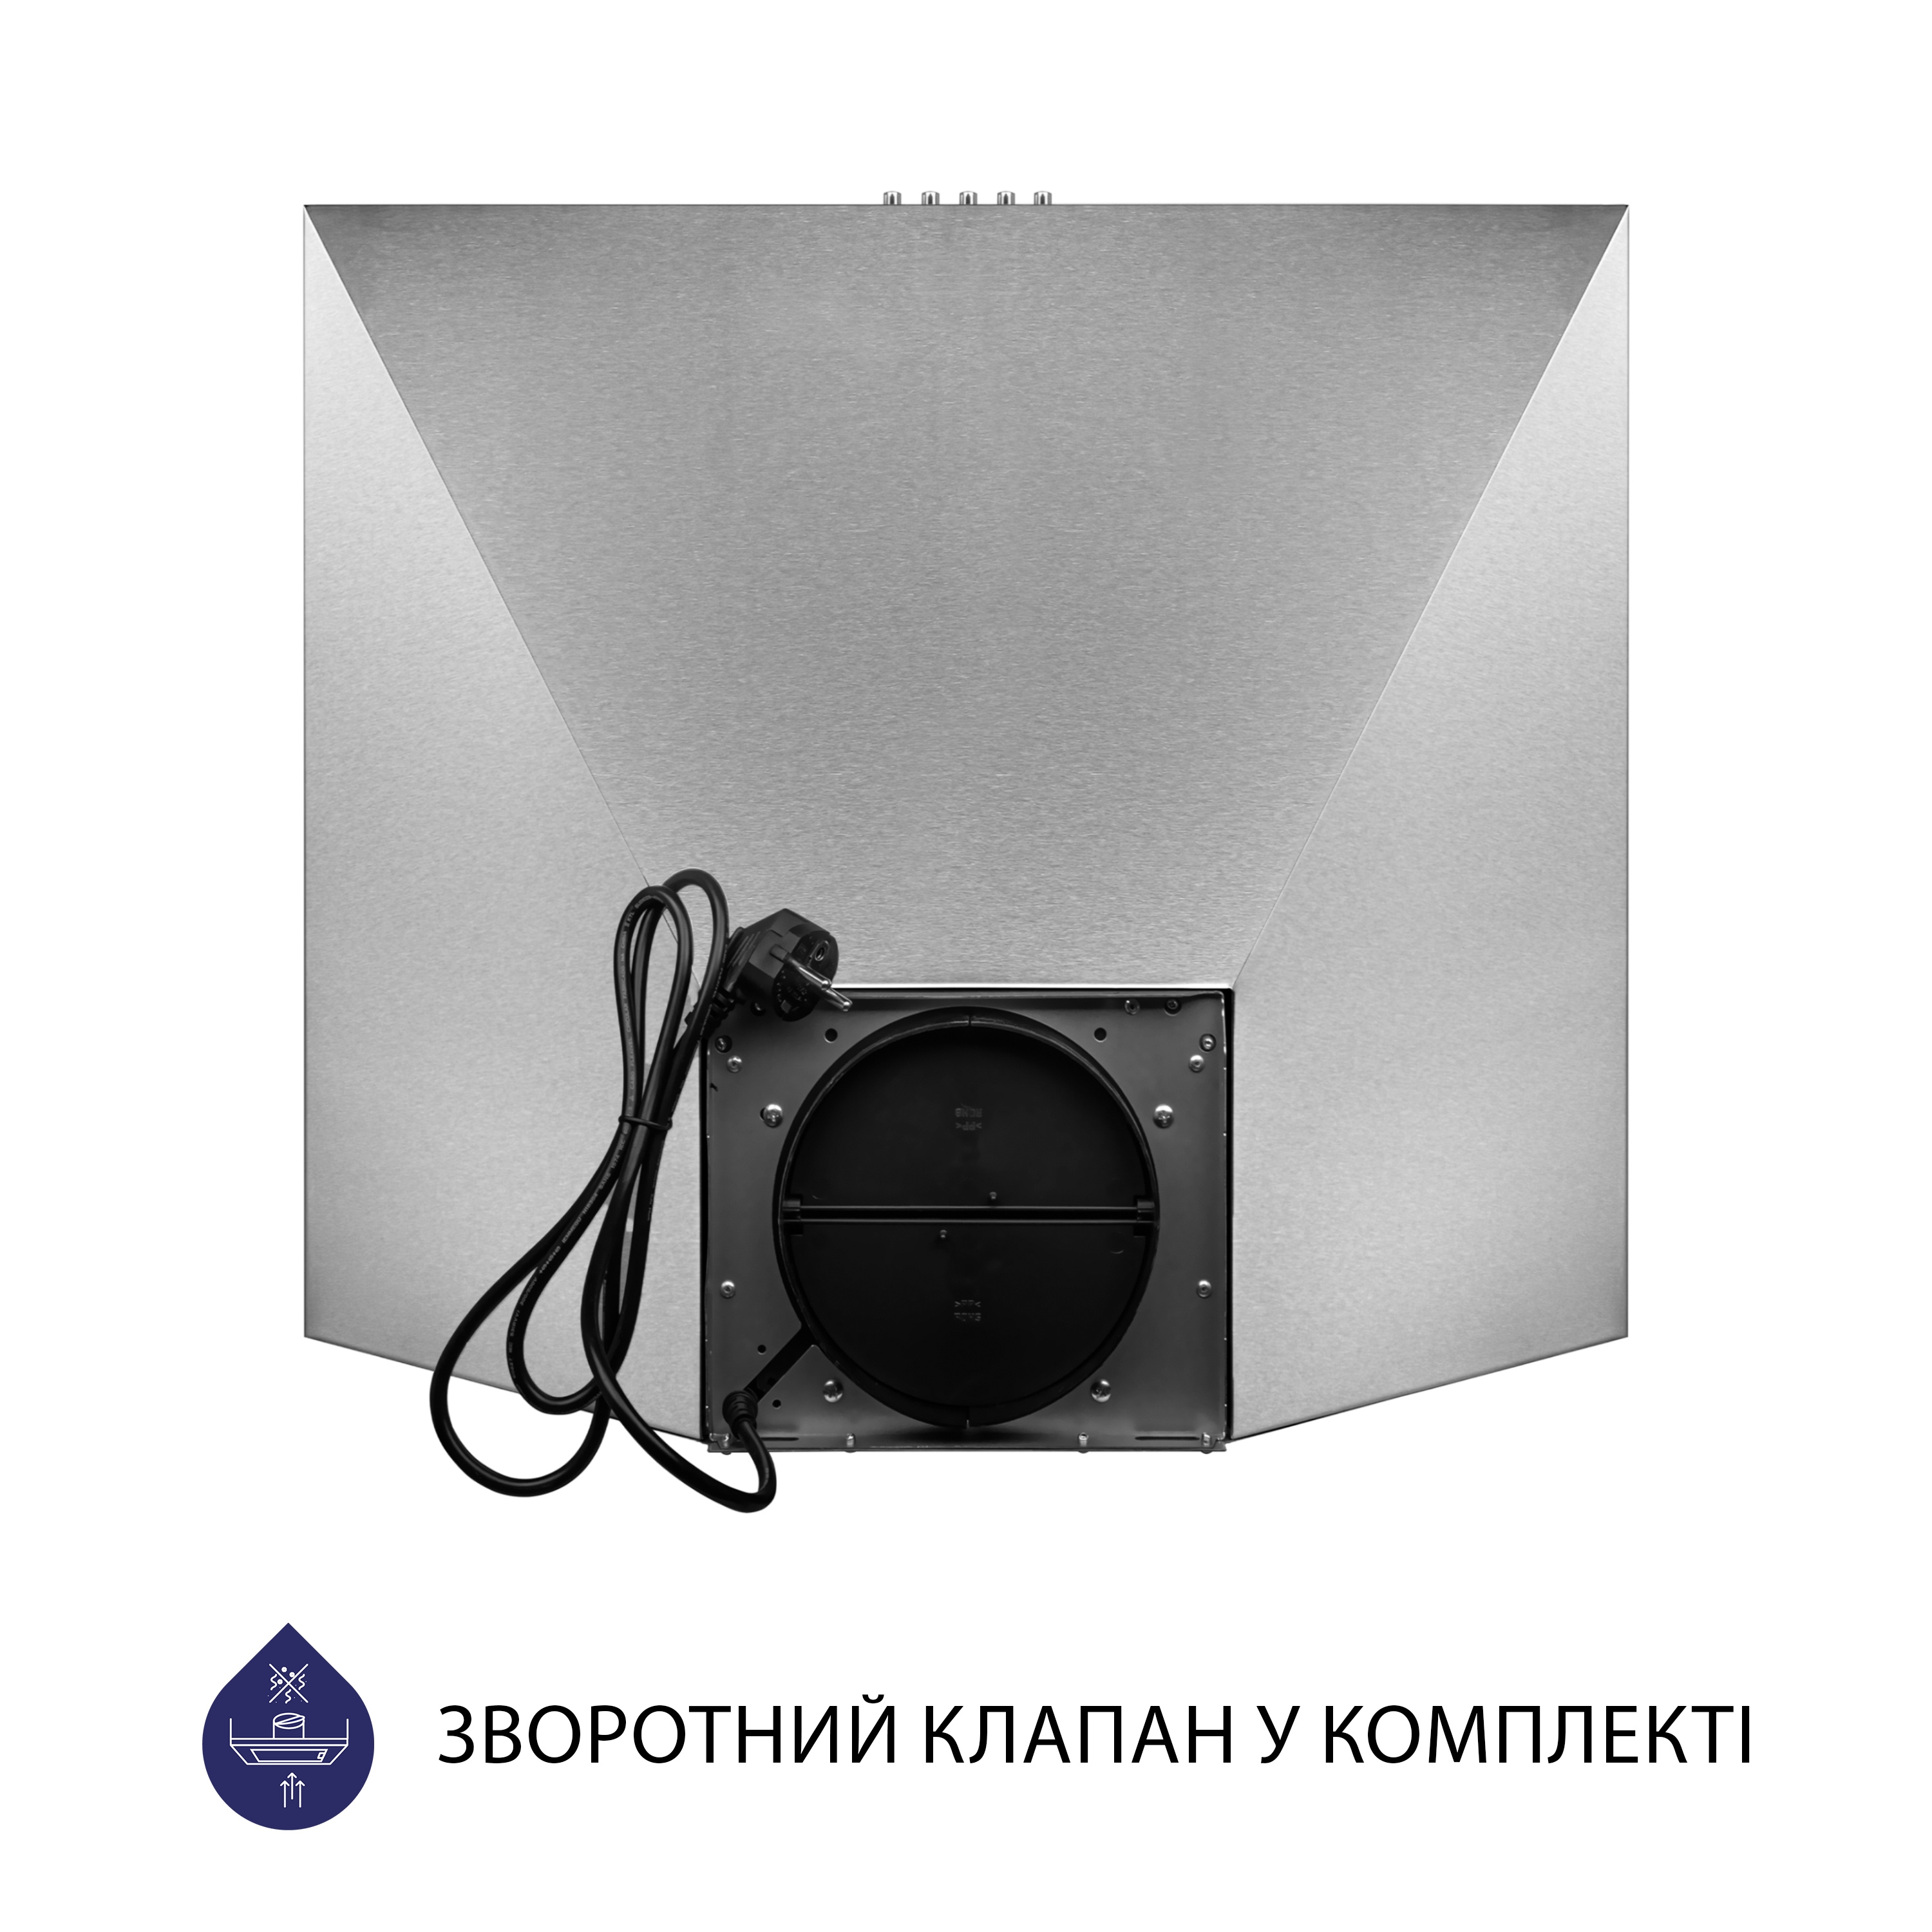 Витяжка кухонная купольная Minola HK 5214 I 700 LED характеристики - фотография 7